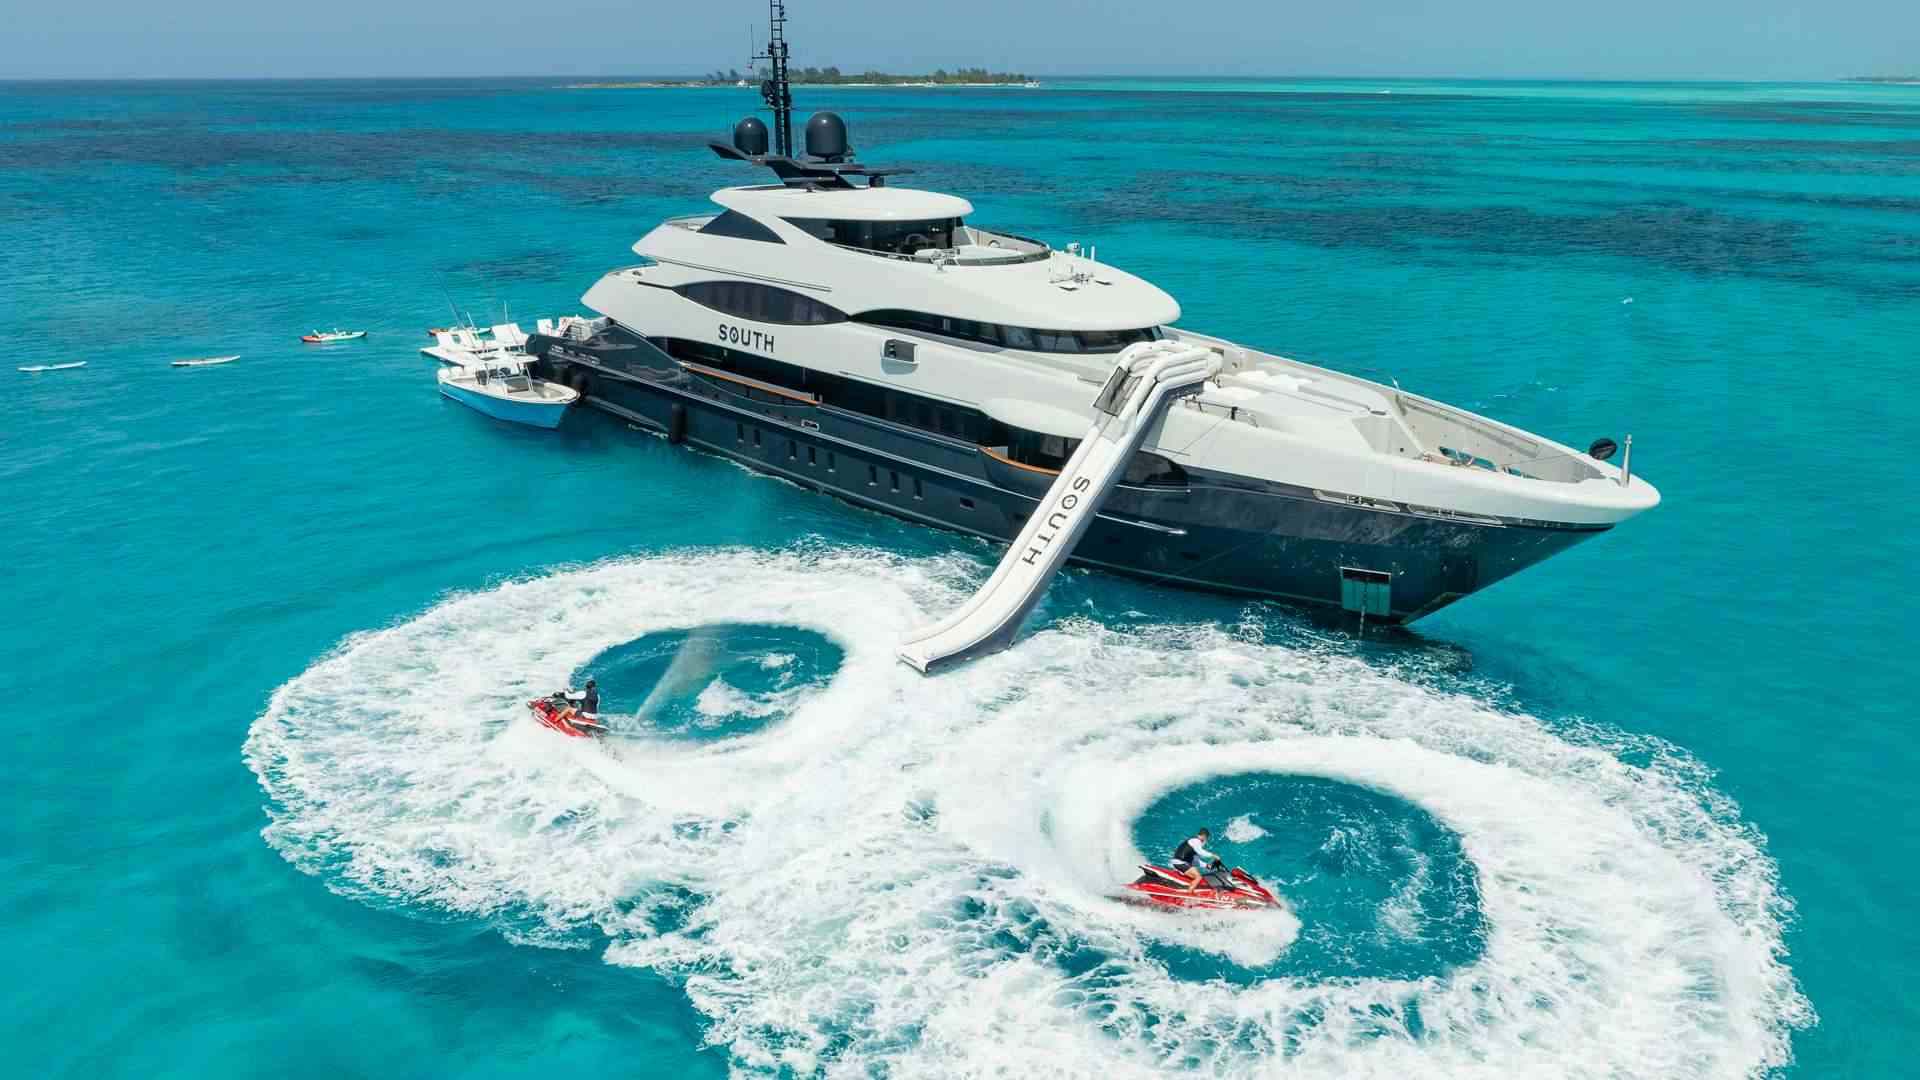 SOUTH - Yacht Charter Bahamas & Boat hire in Bahamas & Caribbean 1